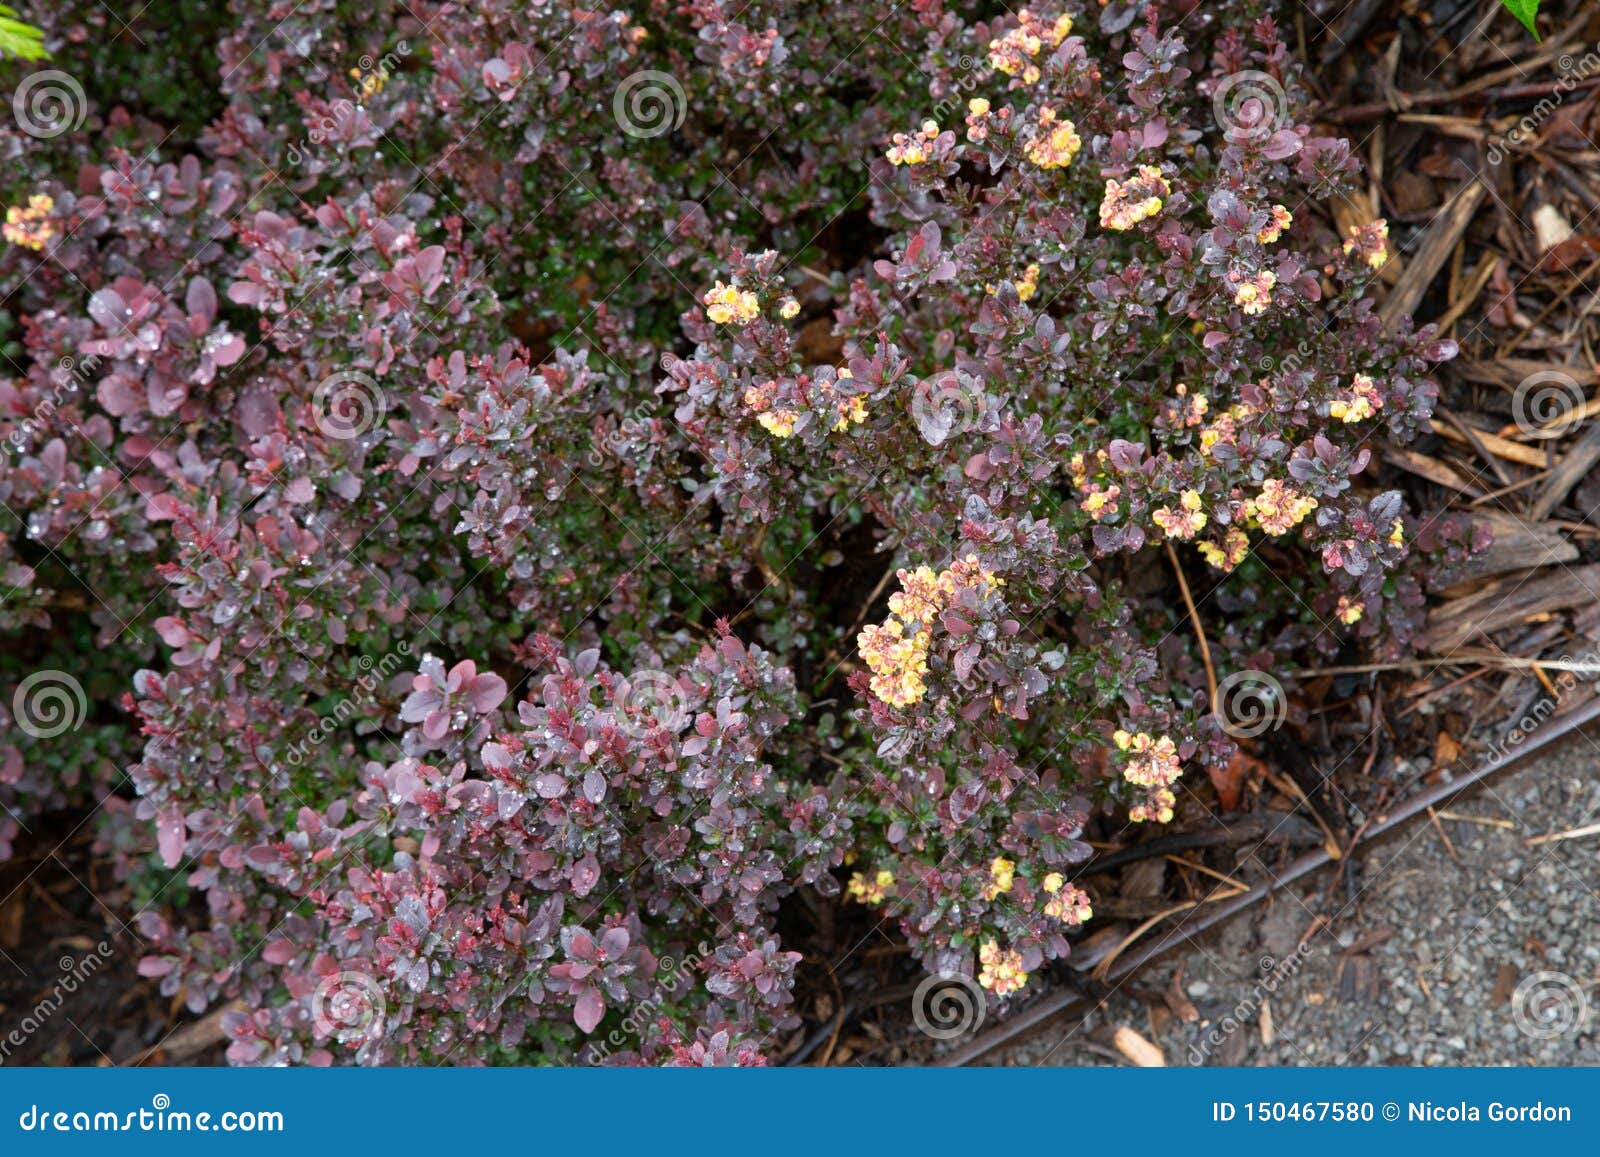 Ãâ°pine-vinette du japon japanese barberry berberis thunbergii.f atropurpurea